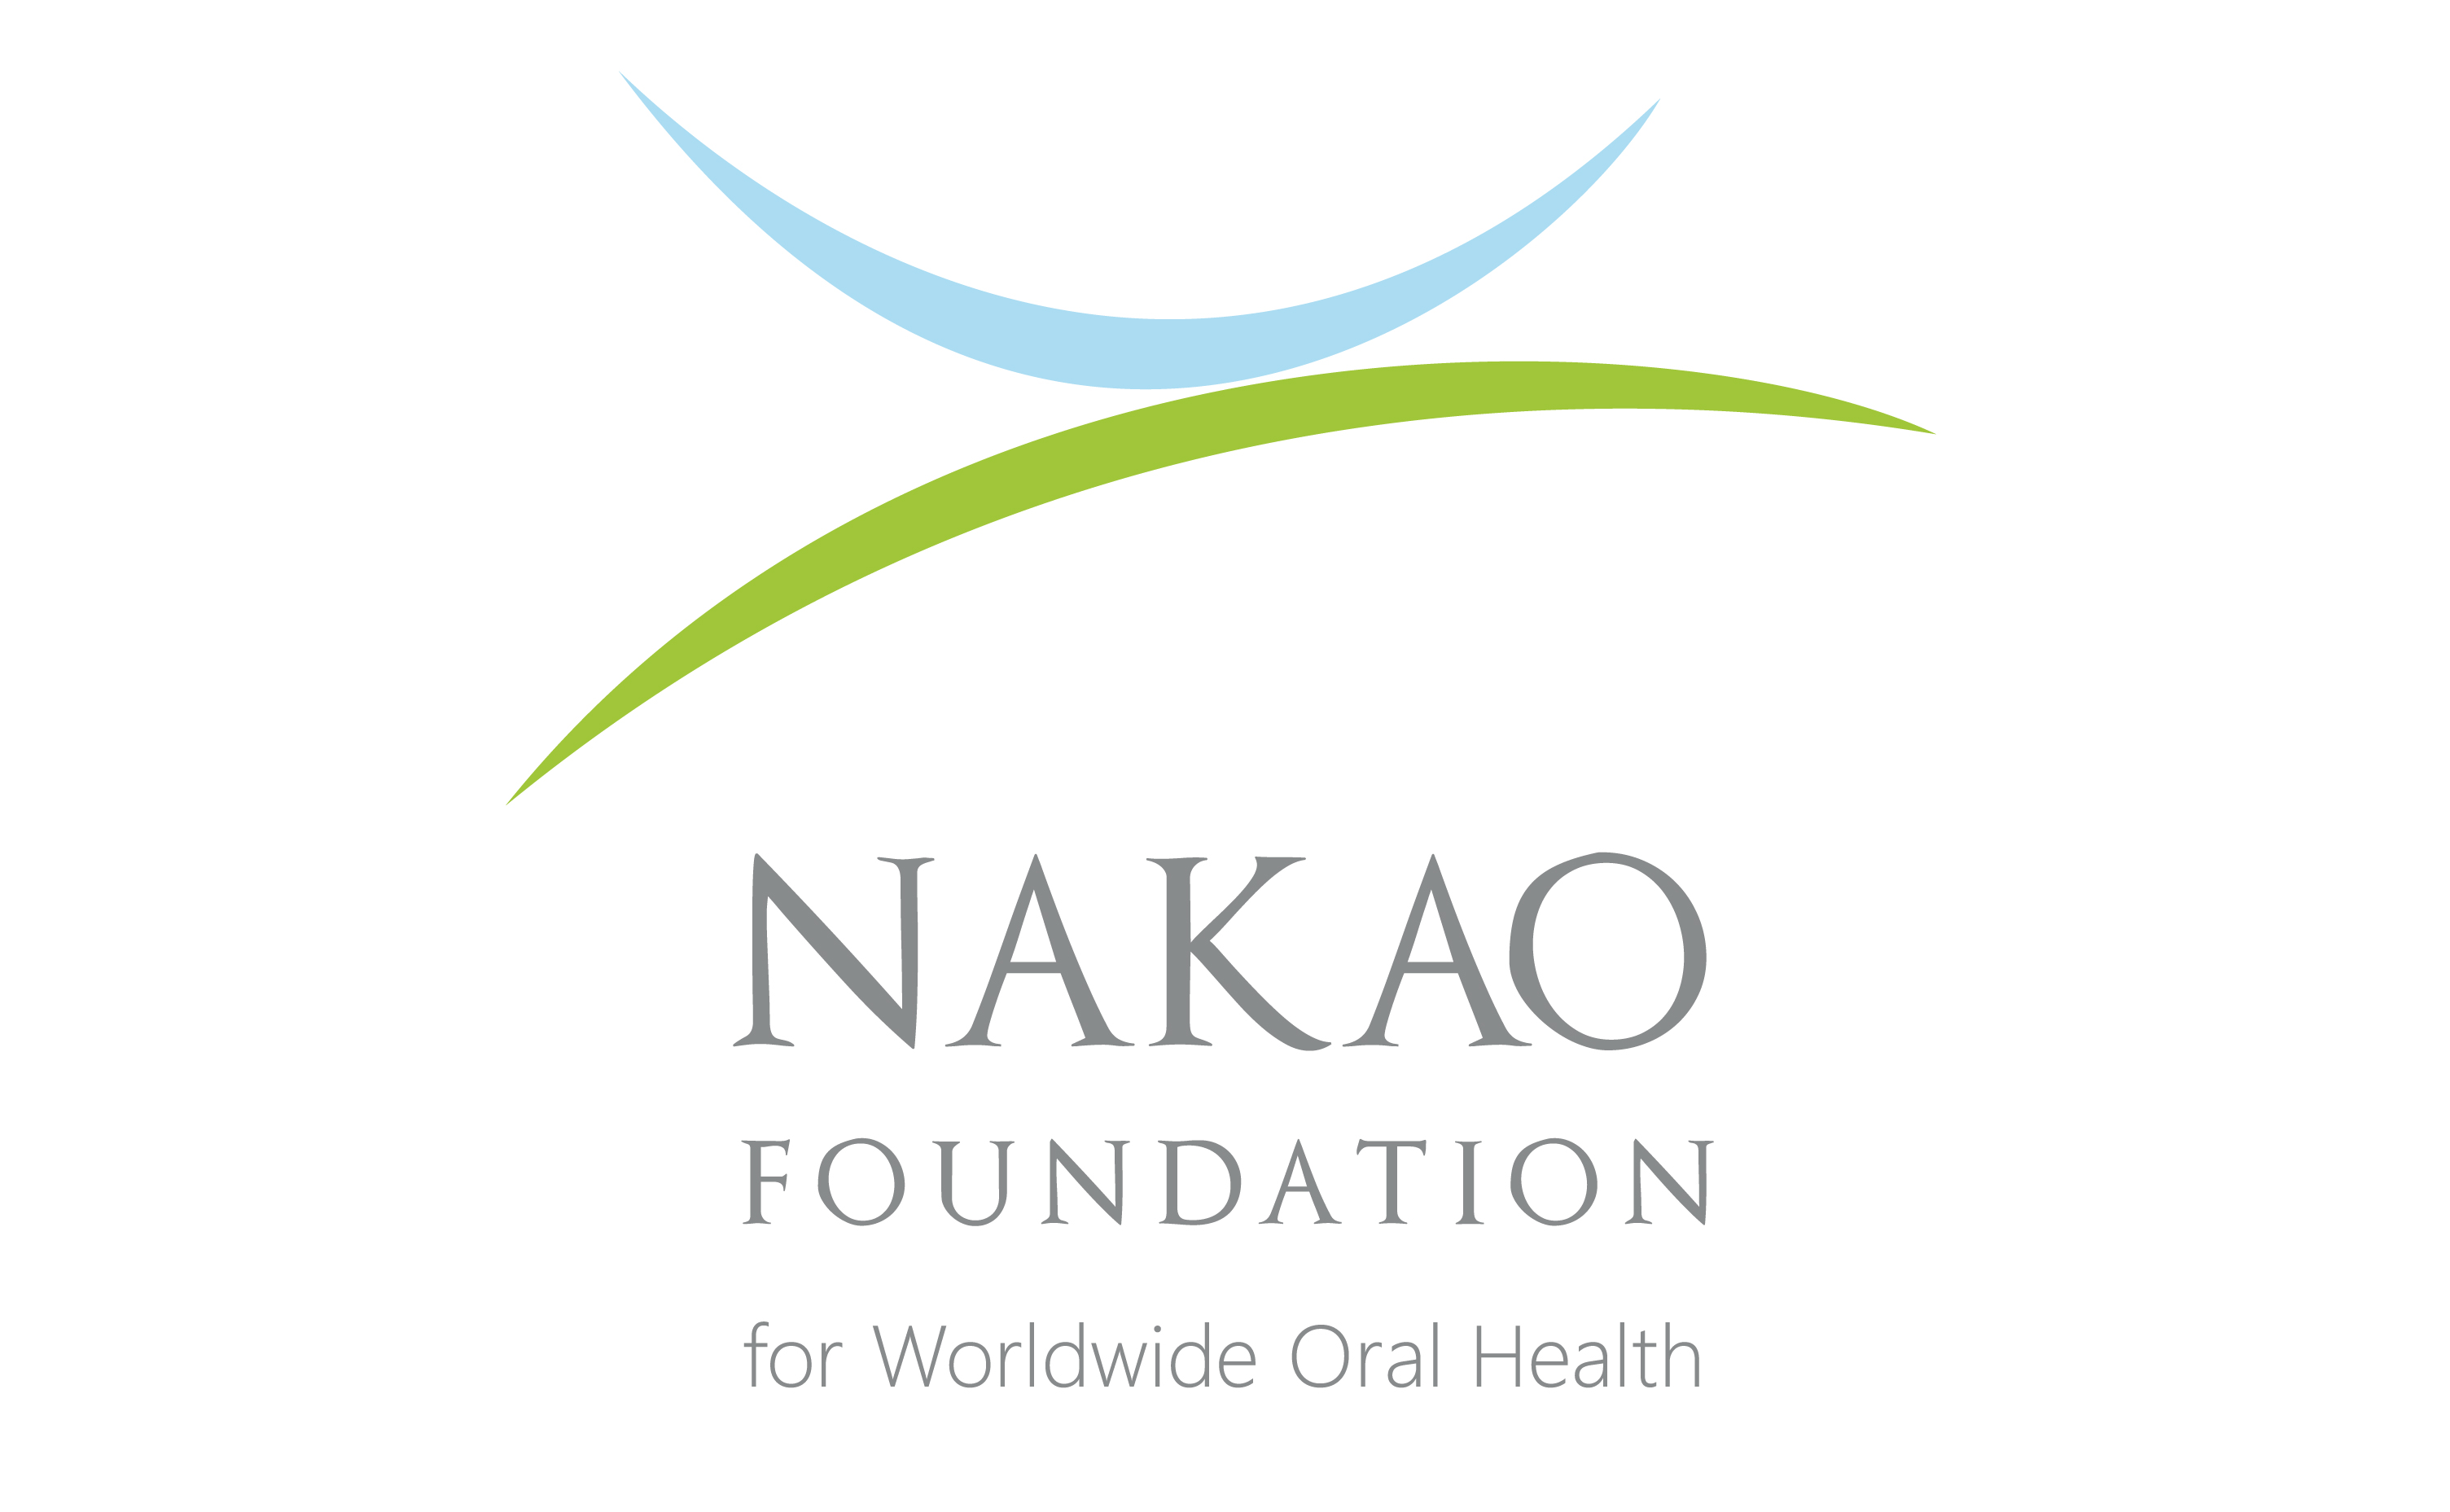 Foundation Nakao